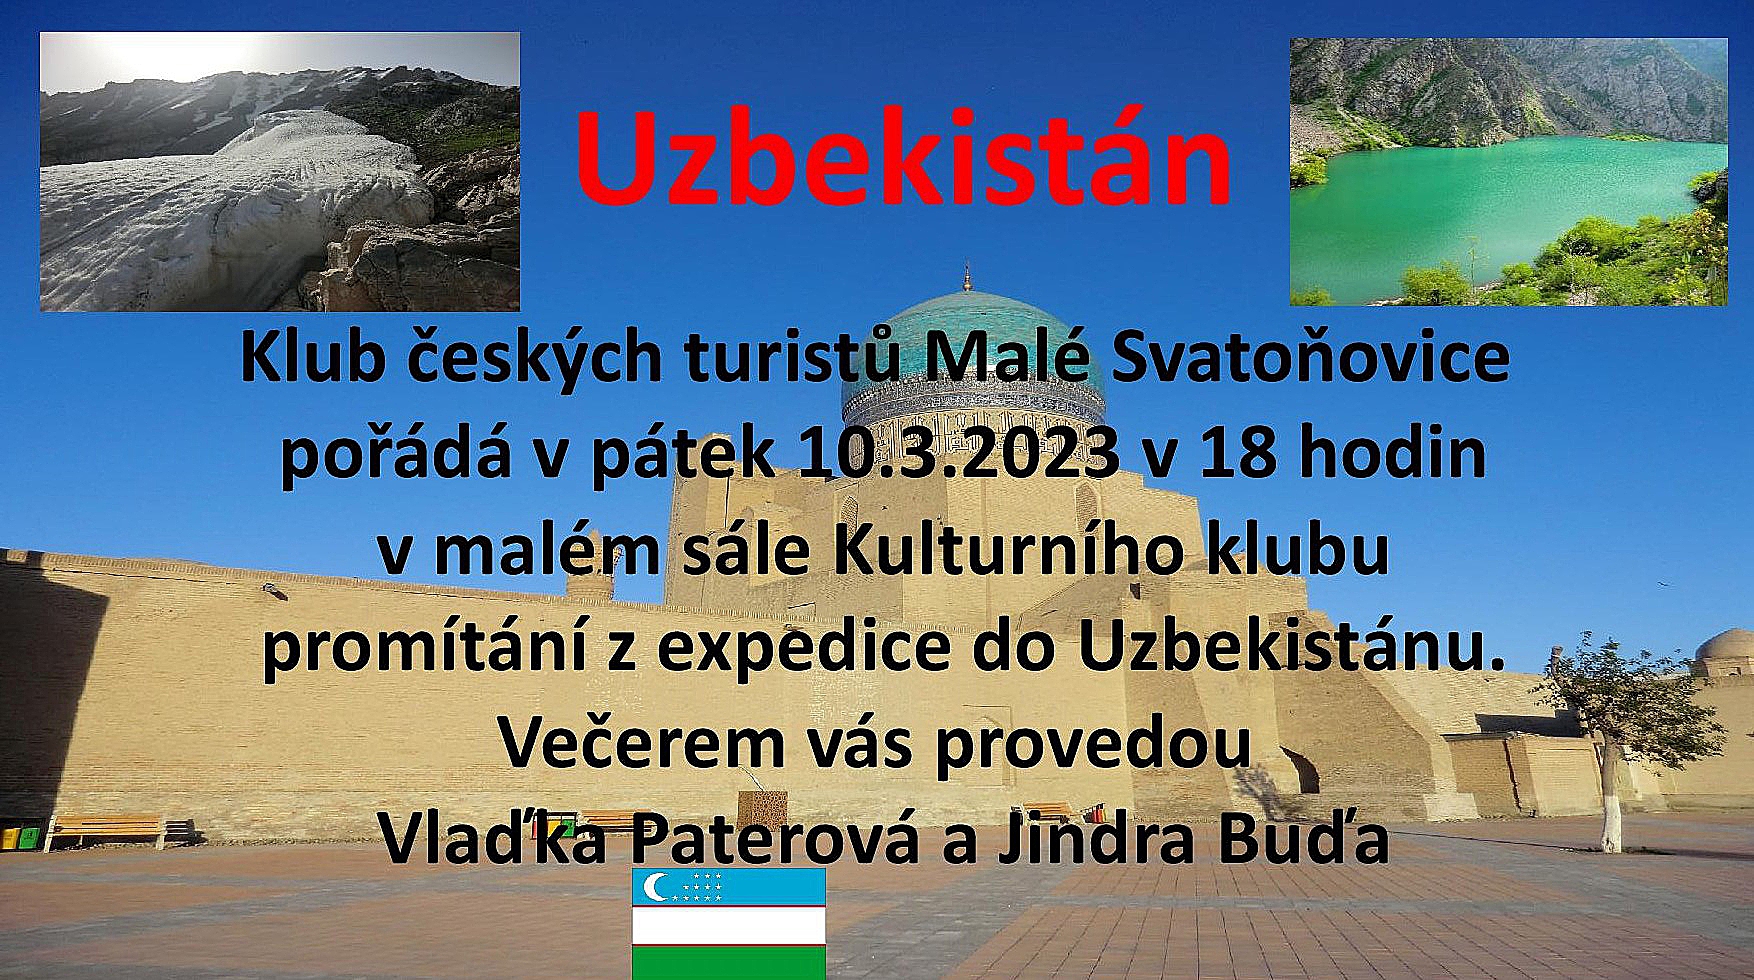 Cestovatelská beseda o Uzbekistánu